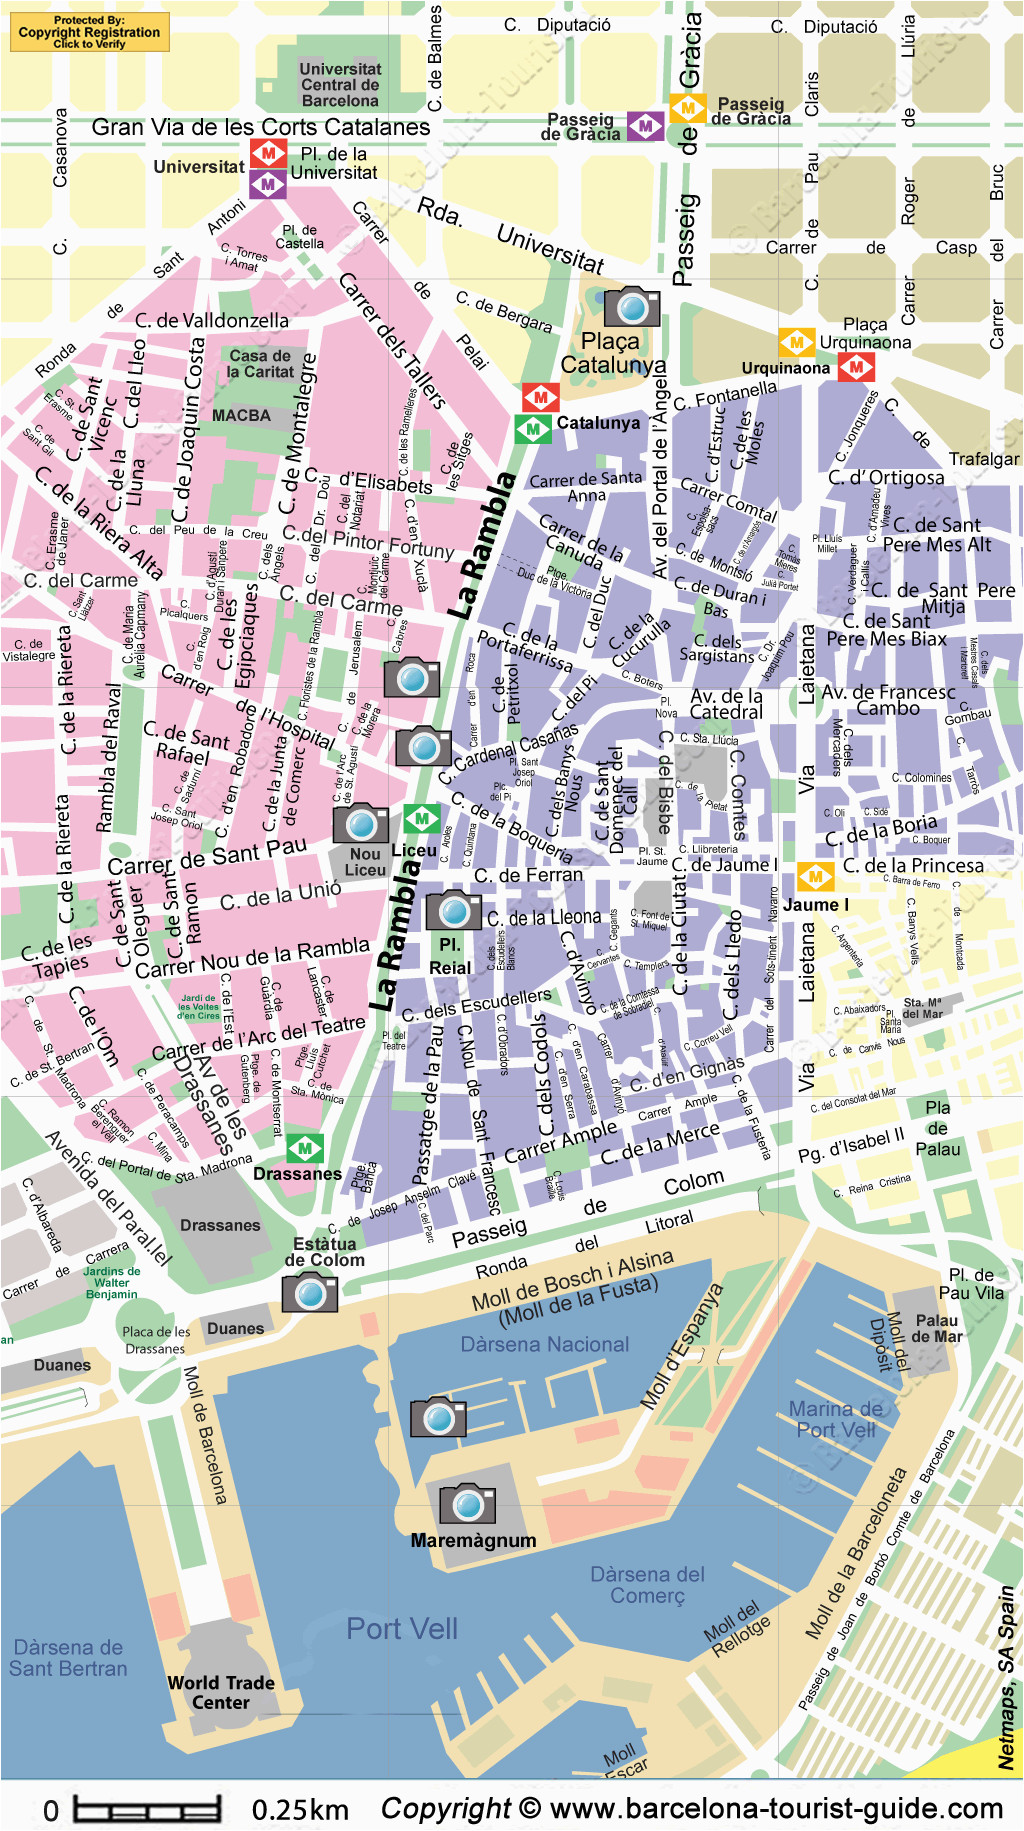 map of las ramblas in barcelona